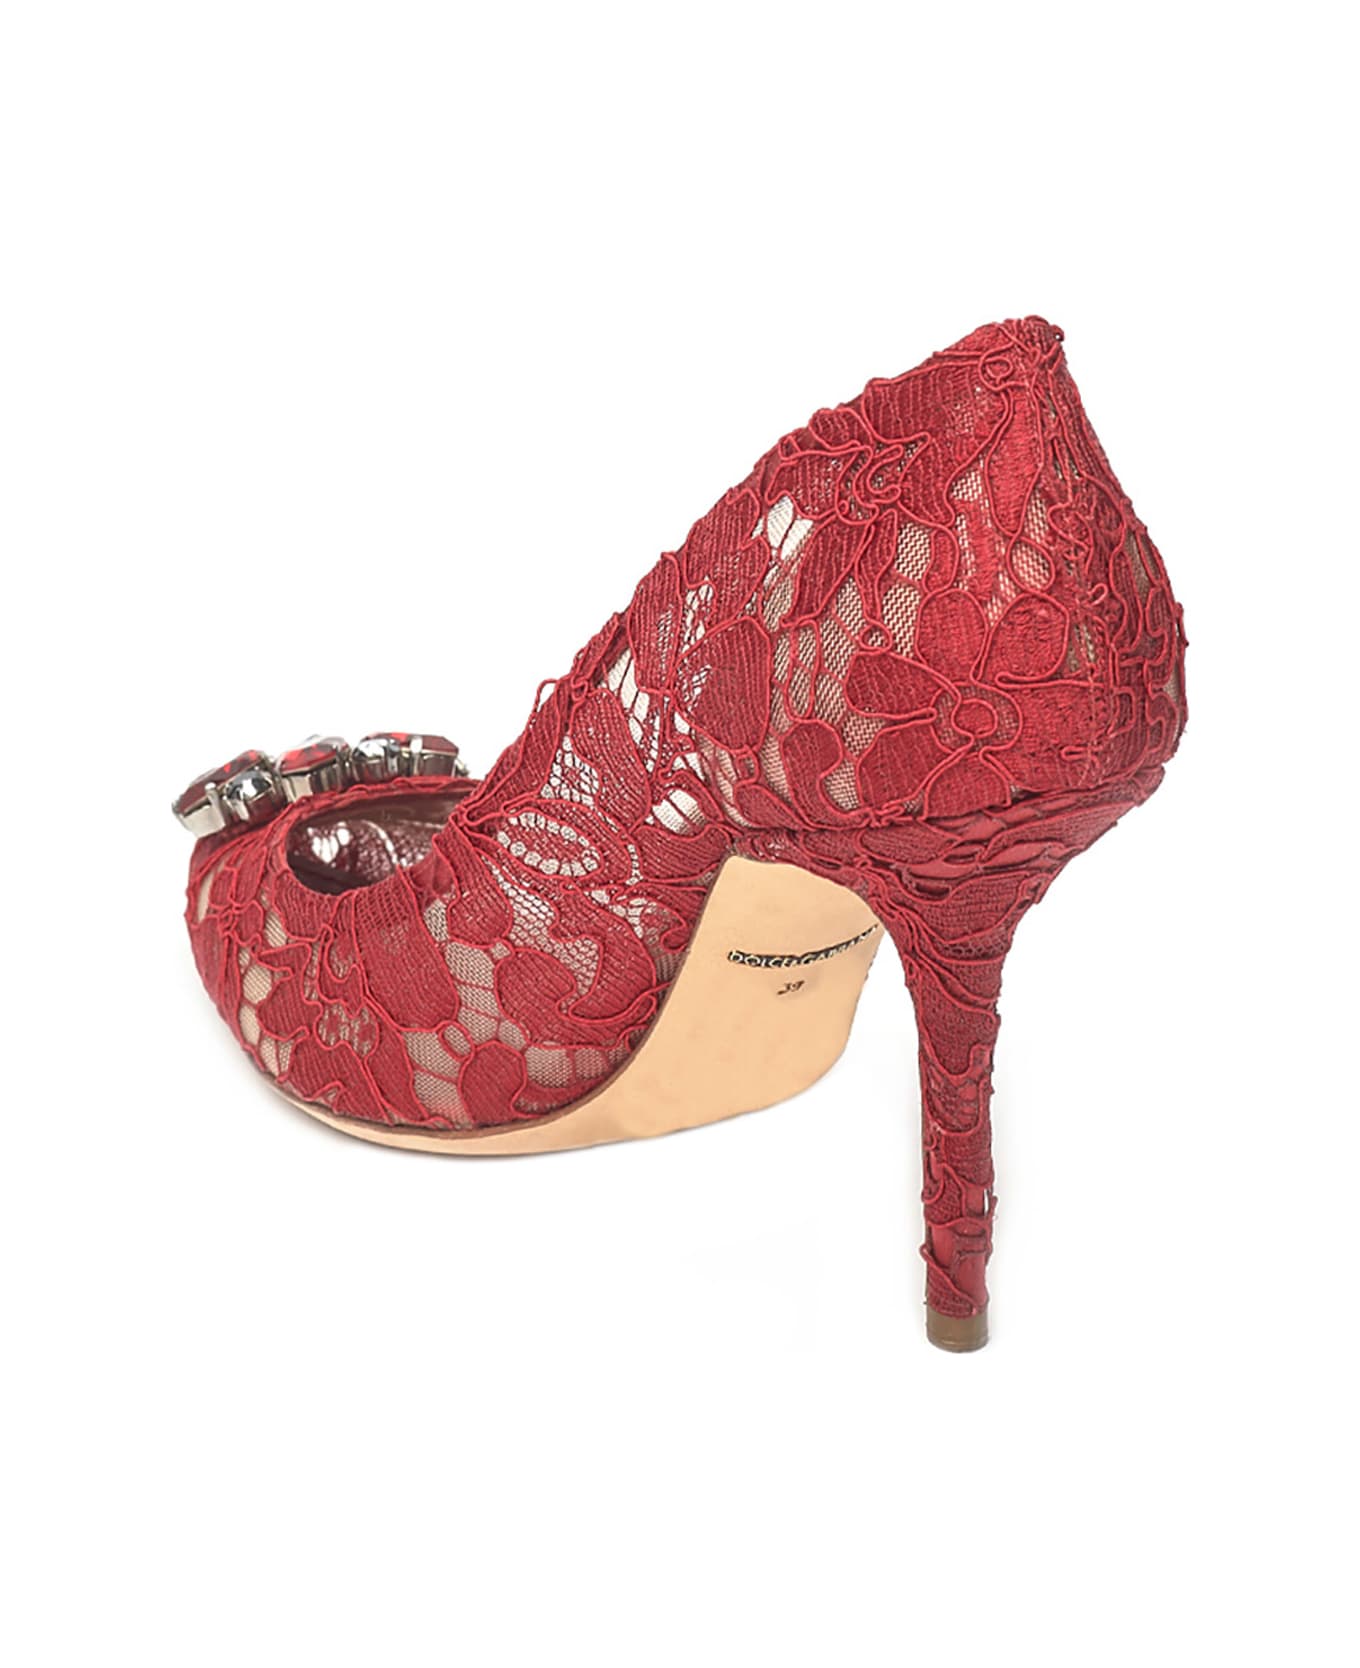 Dolce & Gabbana 'bellucci' Pumps - Red